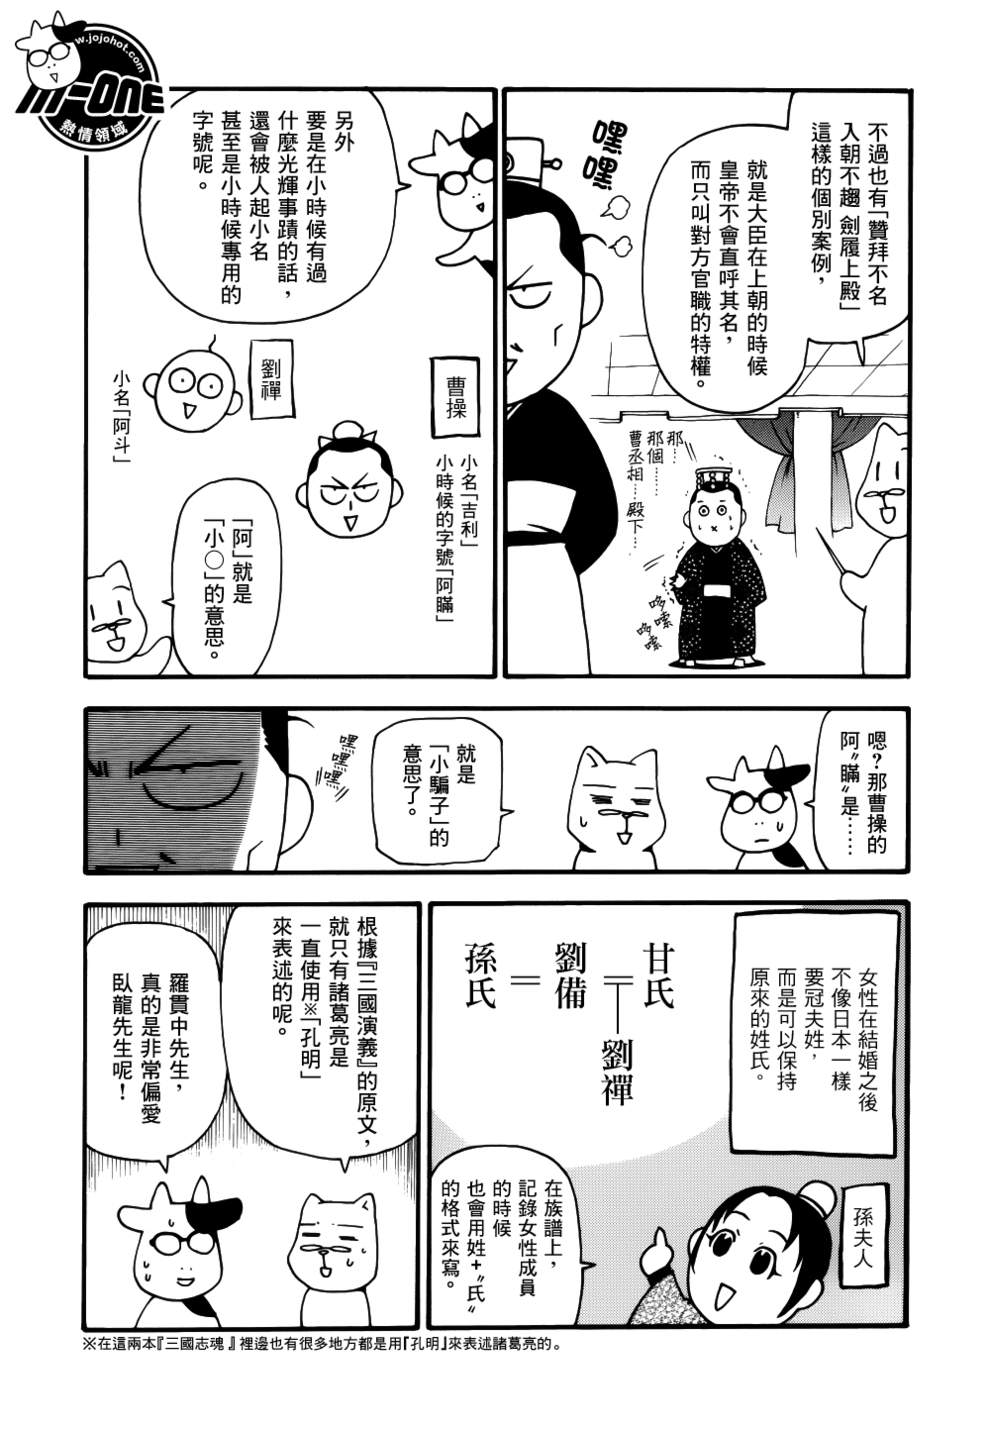 《三国志魂》漫画 11-20集